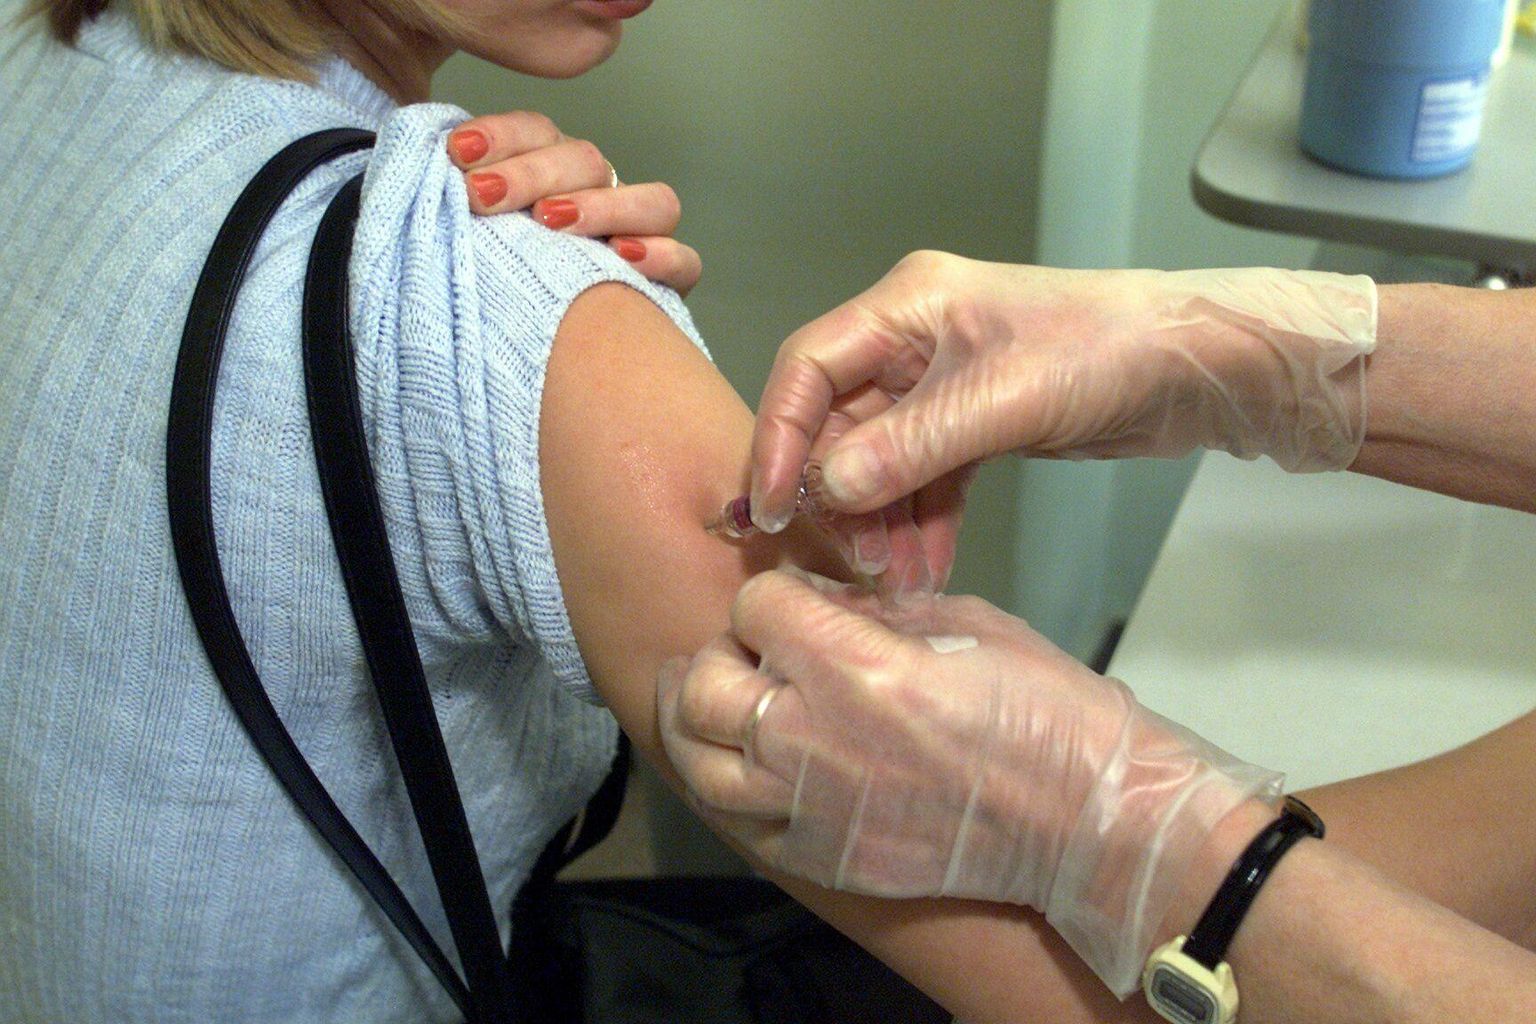 Tervisekassa kampaania kannab sõnumit “Vaktsiiniga on kindlam”.